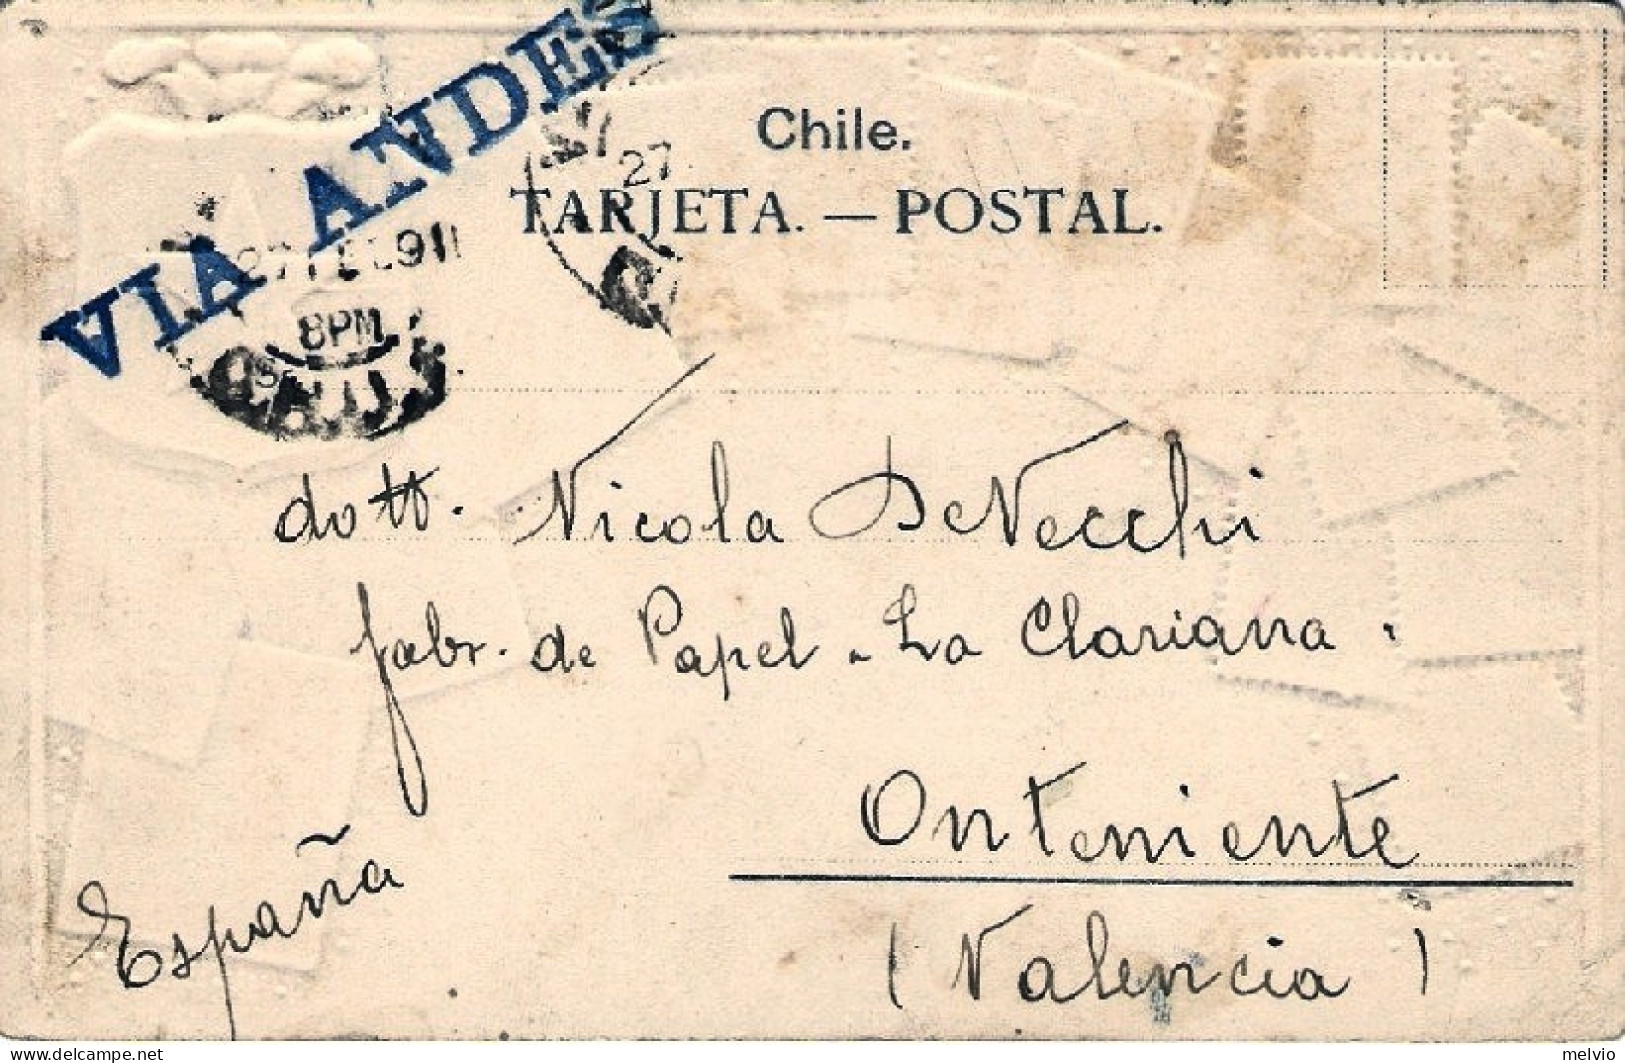 1904-Cile Cartolina Con Facsimile Di Francobolli Cileni In Rilievo Diretta In Sp - Chili